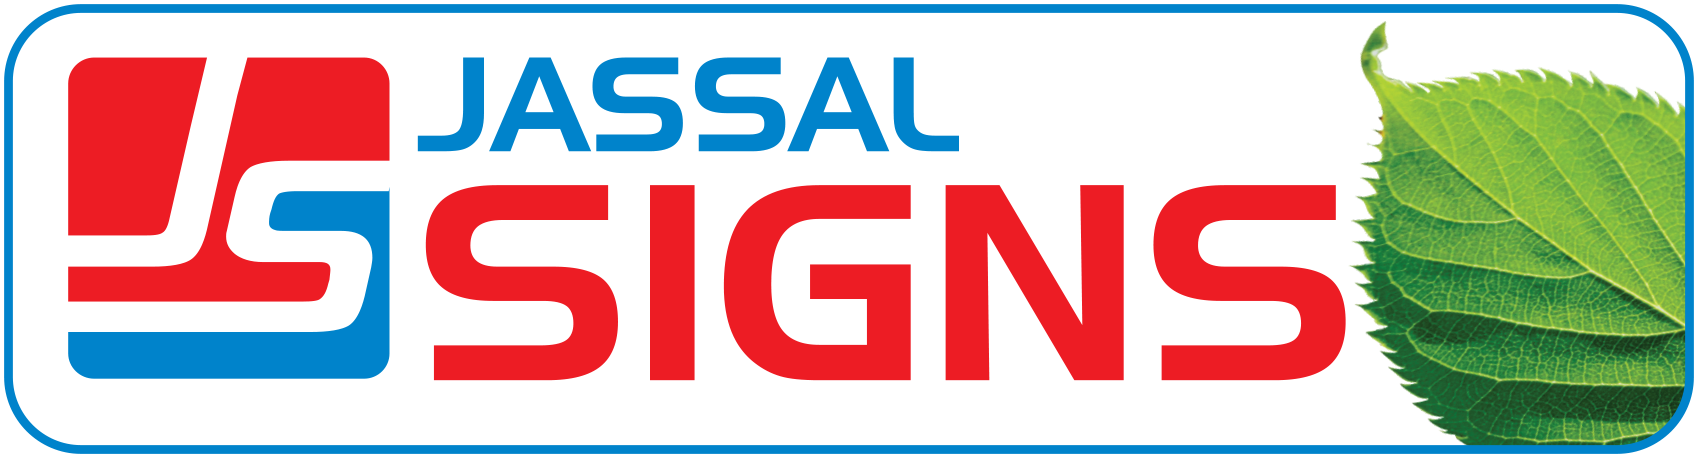 Jassal-Logo.png